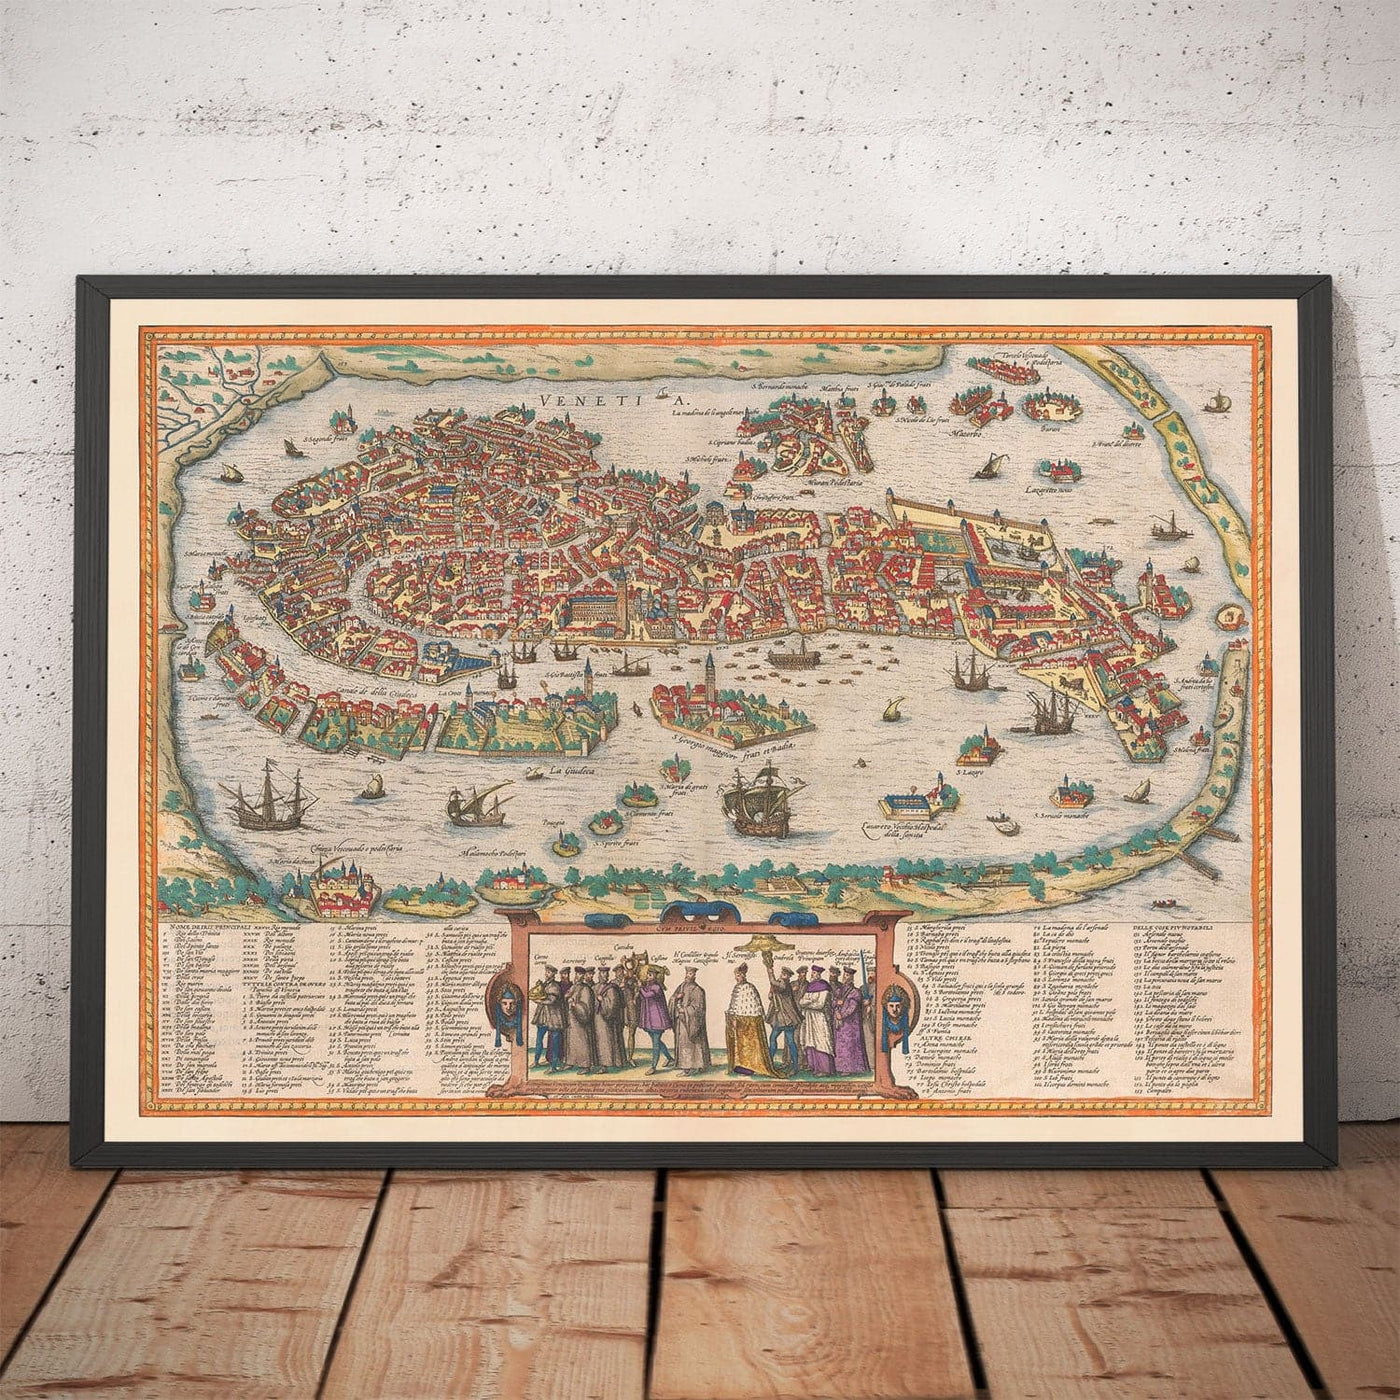 Very Old Map of Venice, 1572 by Georg Braun - Venezia, Murano, Burano, Giudecca, Venetian Lagoon